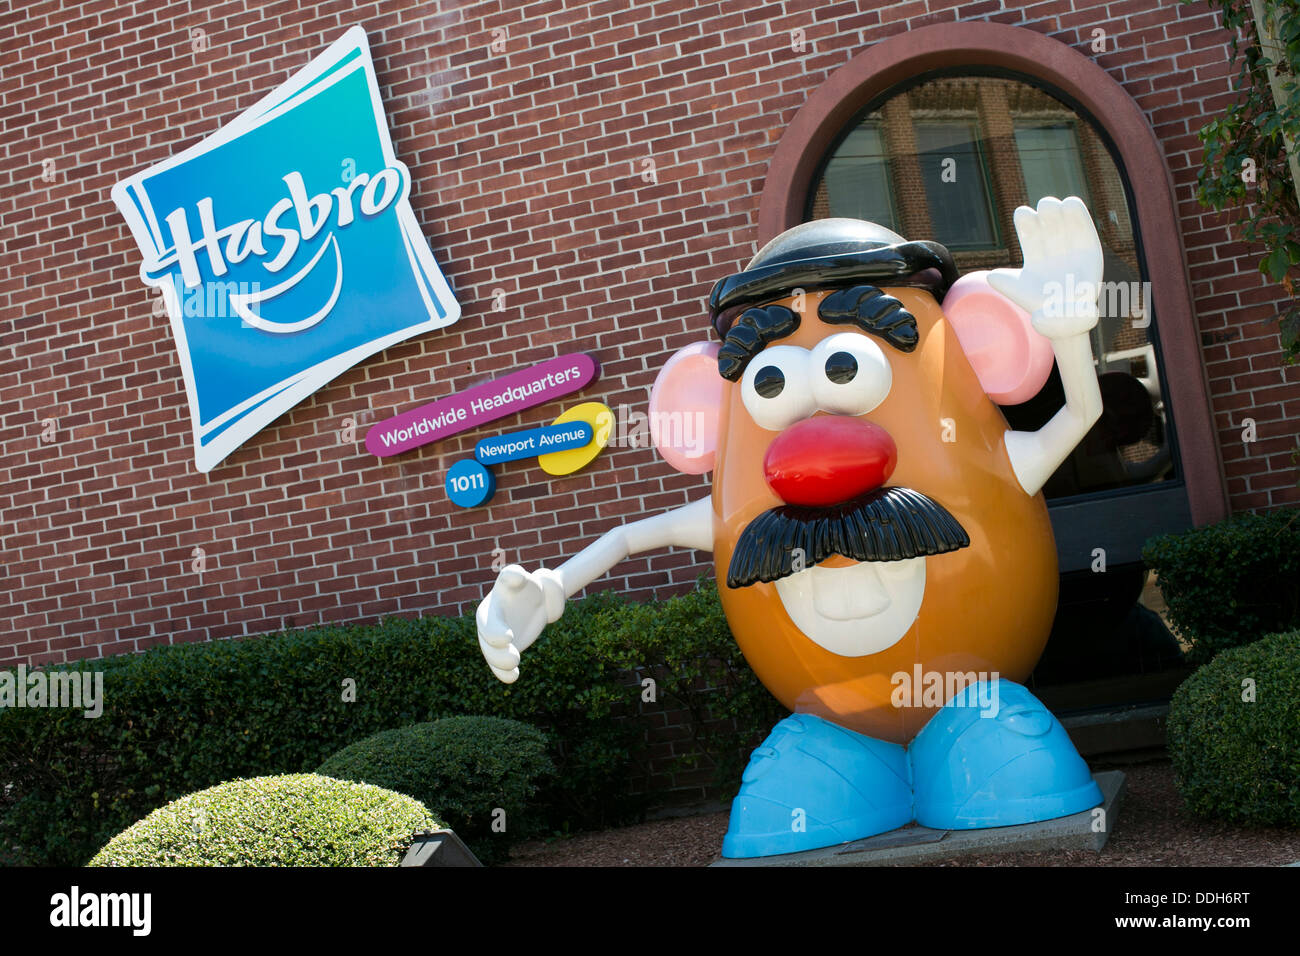 Das Hauptquartier der Spielzeughersteller Hasbro, mit einem riesigen Mr. Potato Head-Figur. Stockfoto